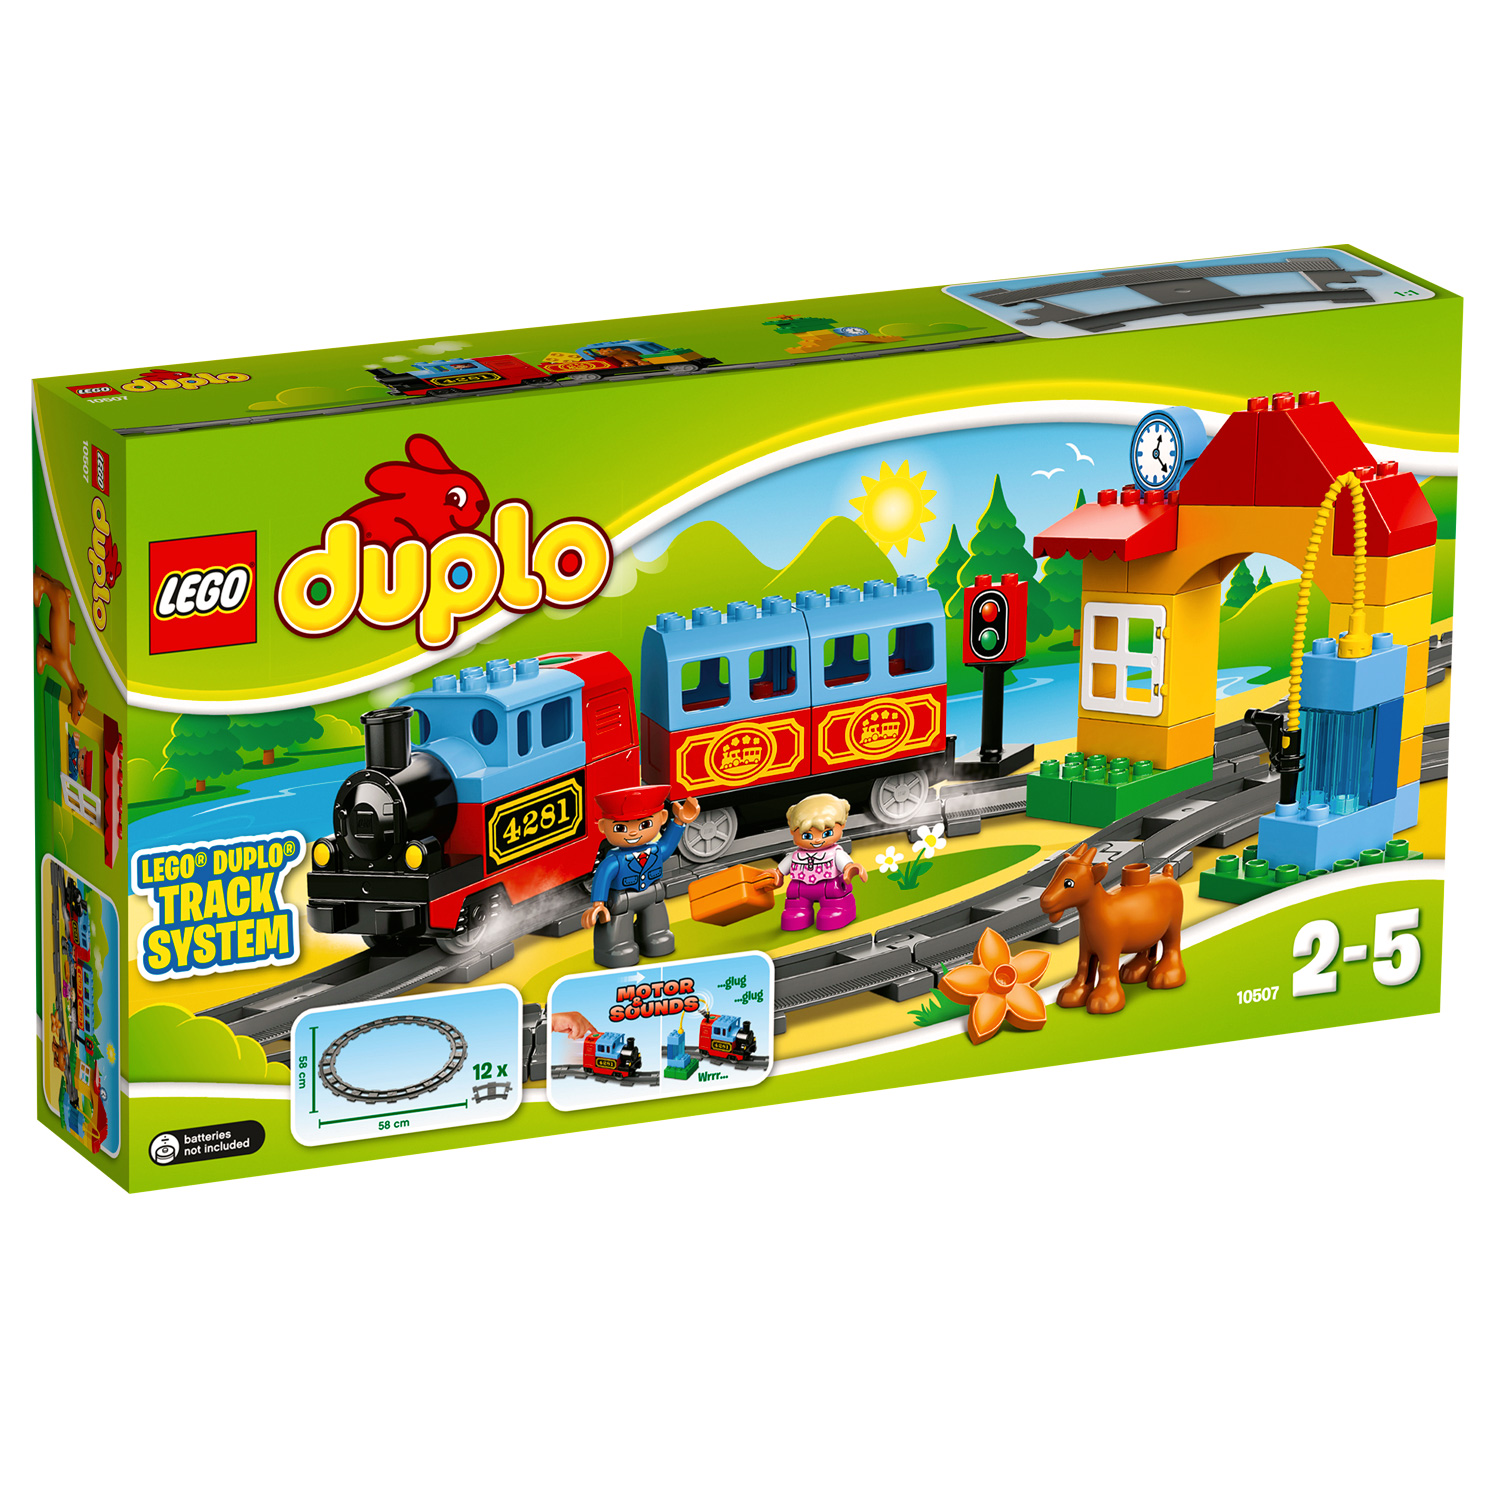 Lego 10507 Duplo : Mon premier train - Jeux et jouets LEGO ® - Avenue des  Jeux